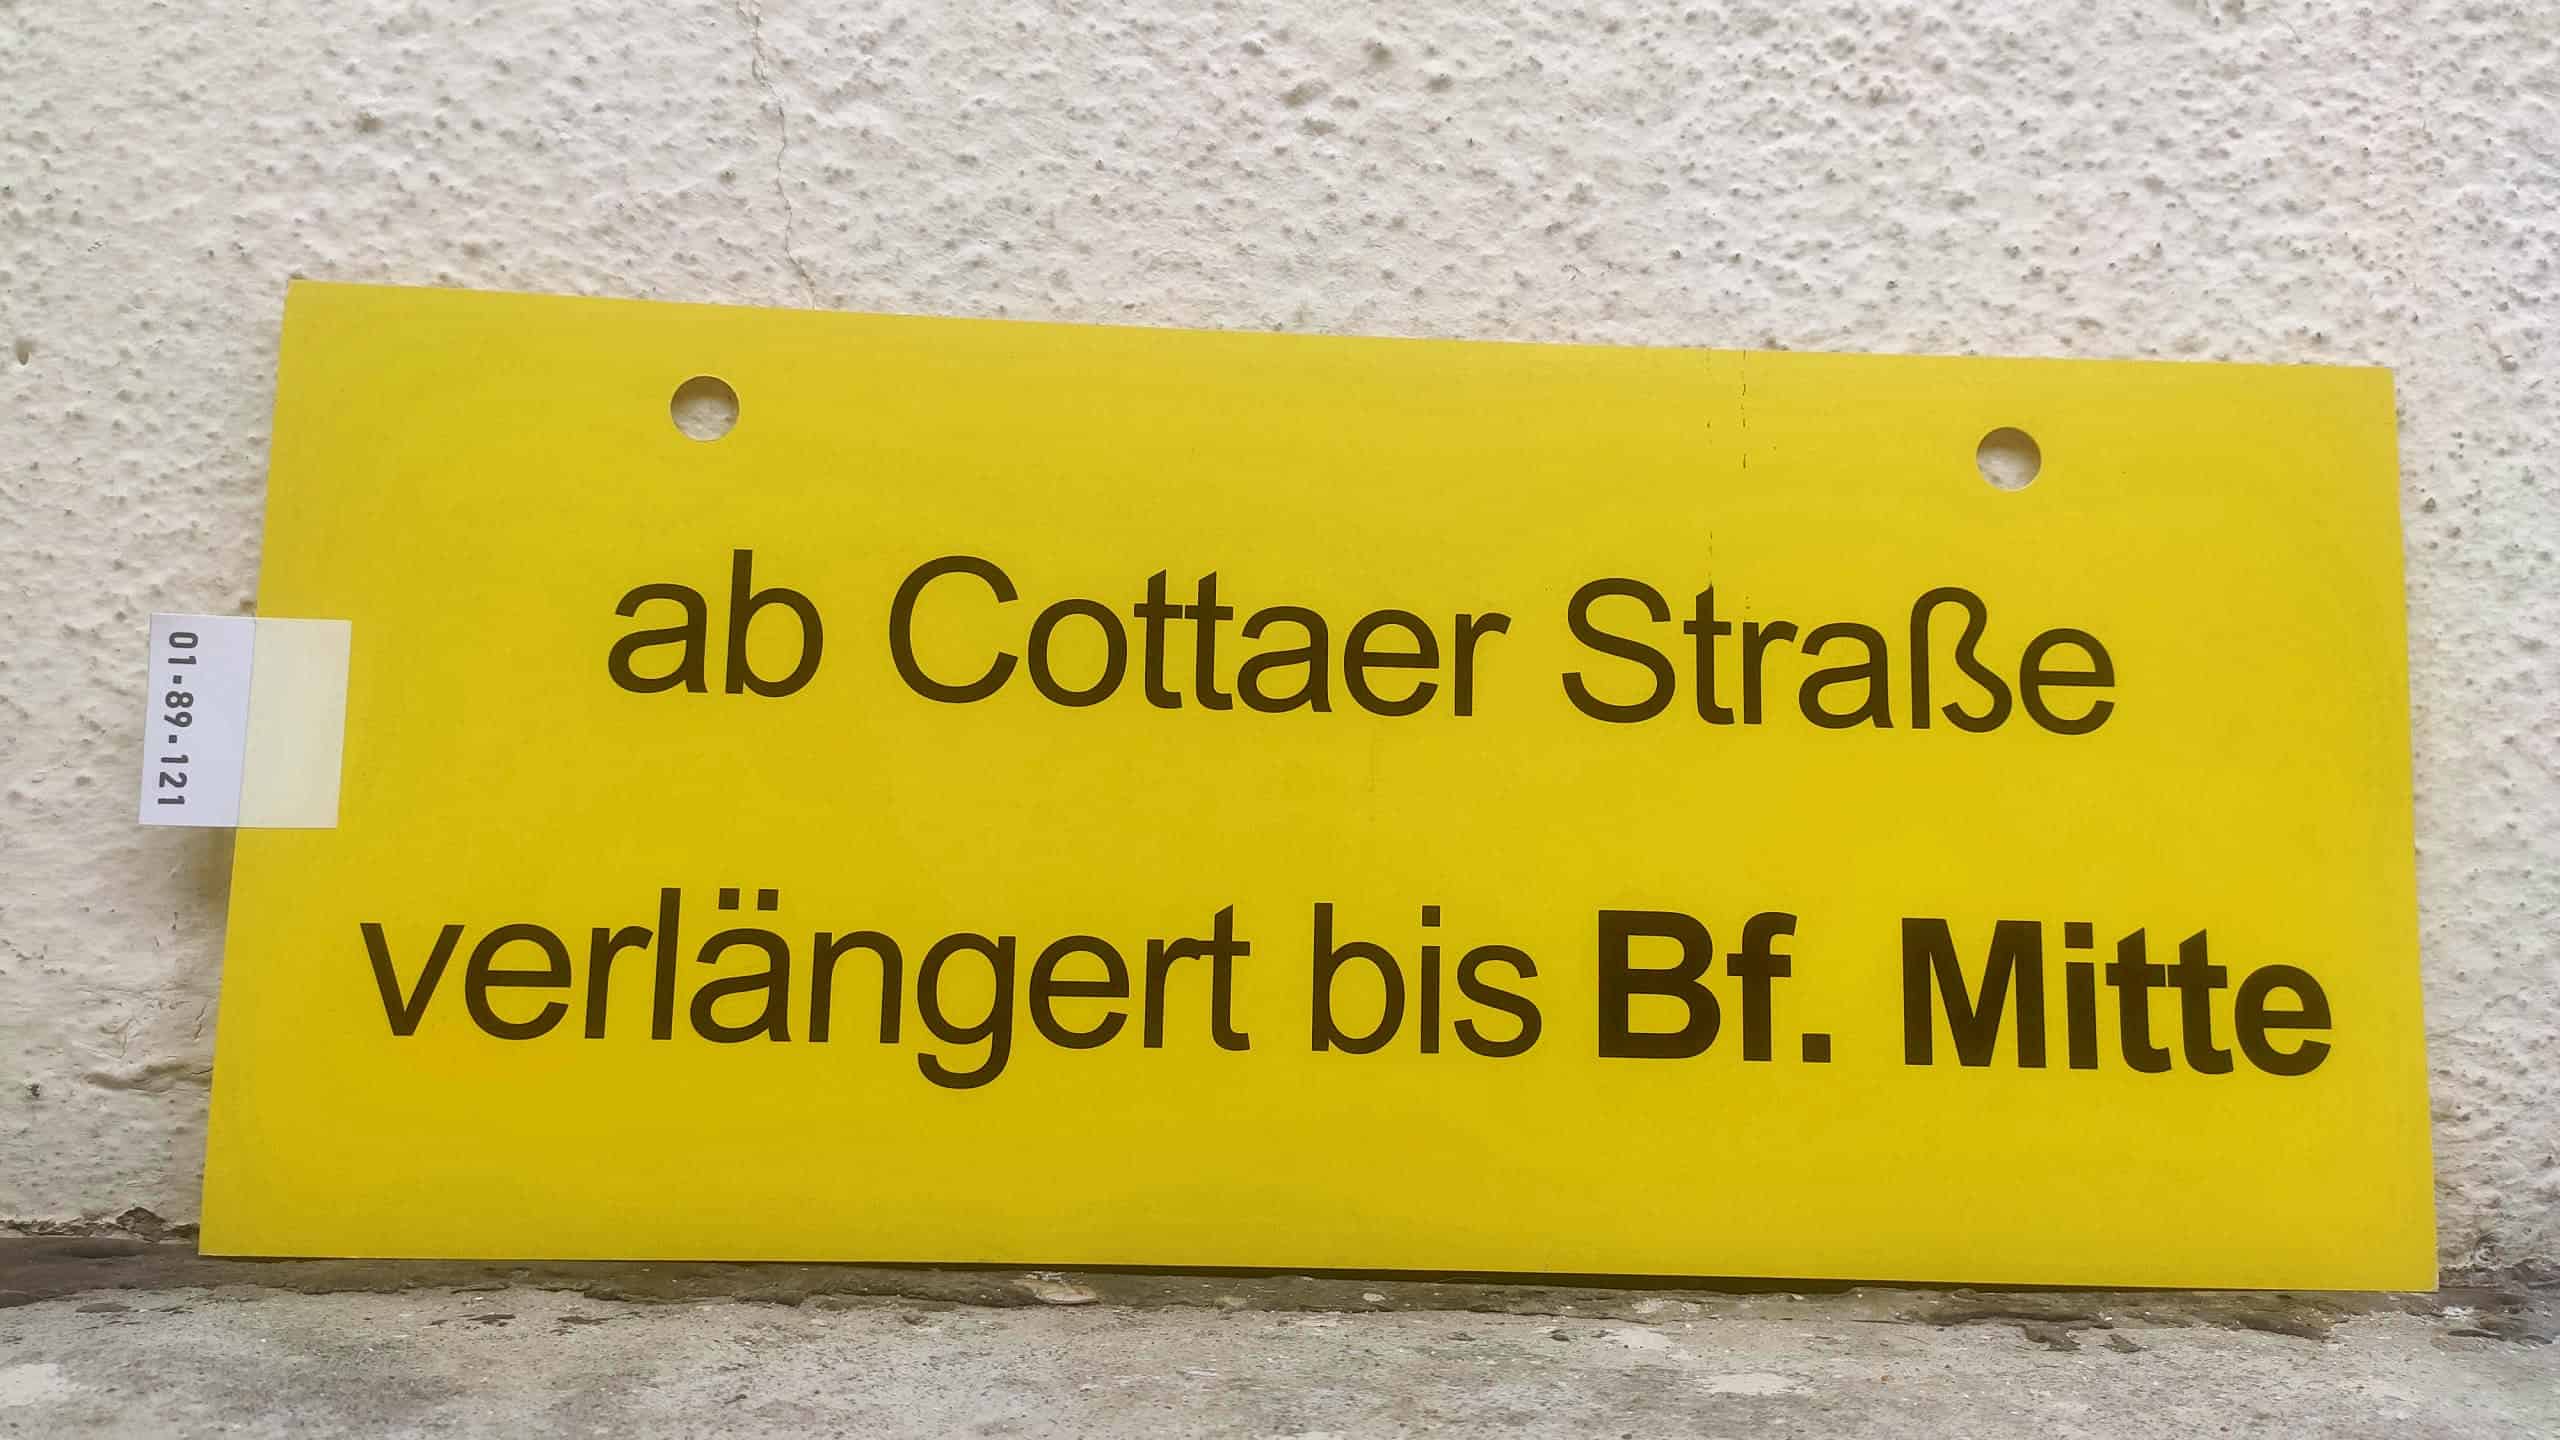 ab Cottaer Straße verlängert bis Bf. Mitte